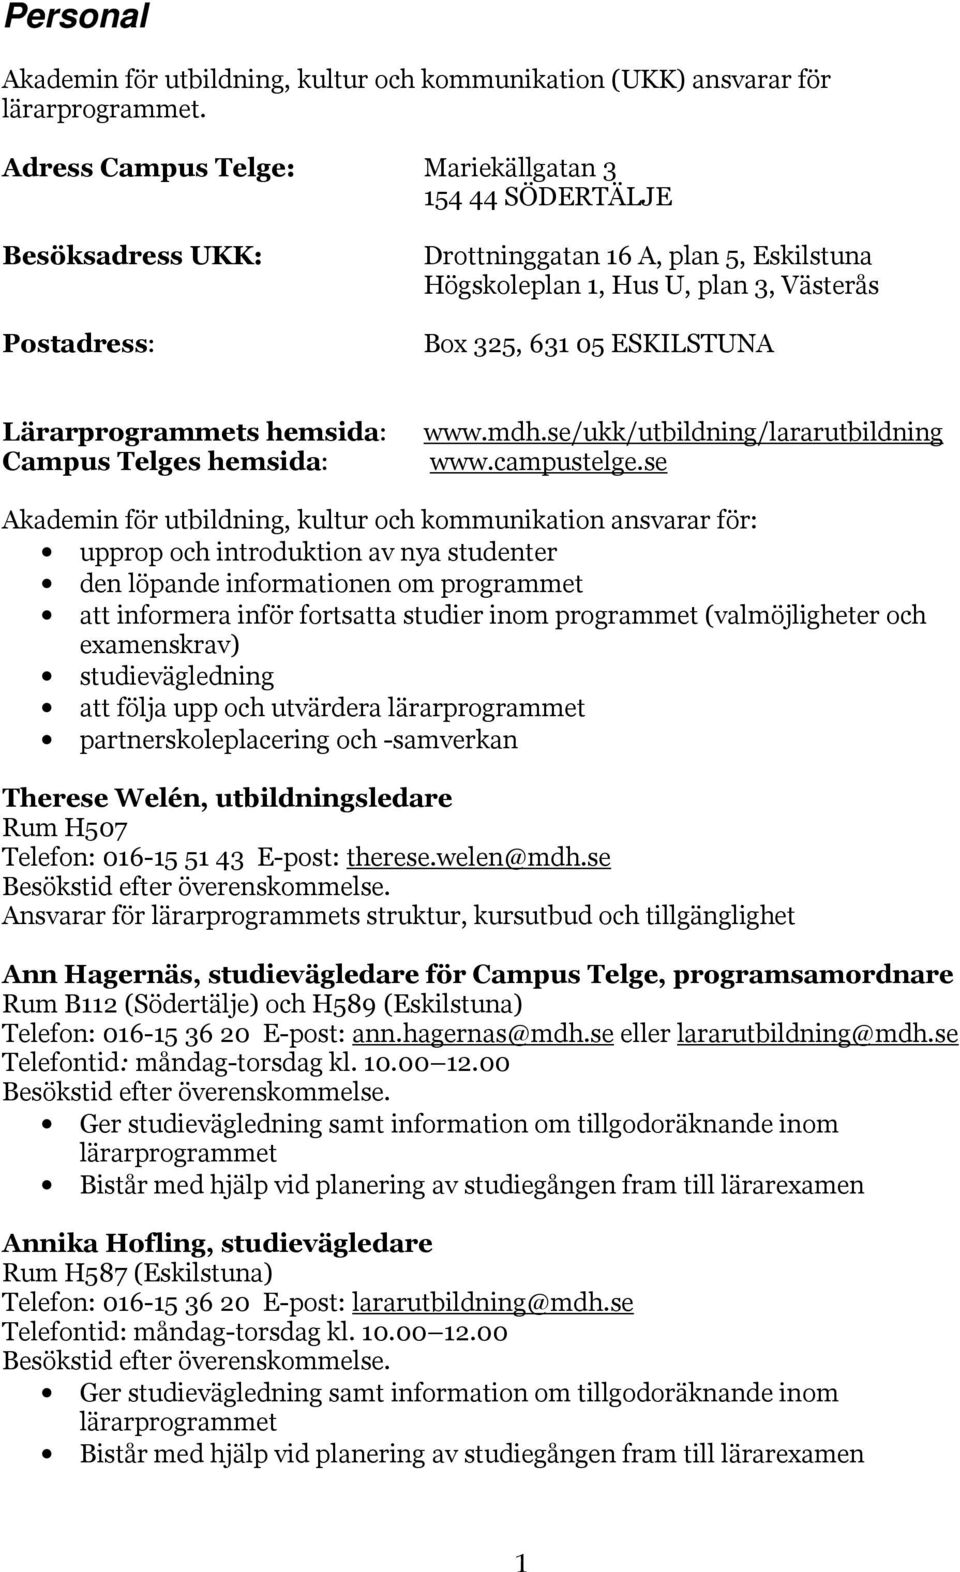 Lärarprogrammets hemsida: Campus Telges hemsida: www.mdh.se/ukk/utbildning/lararutbildning www.campustelge.